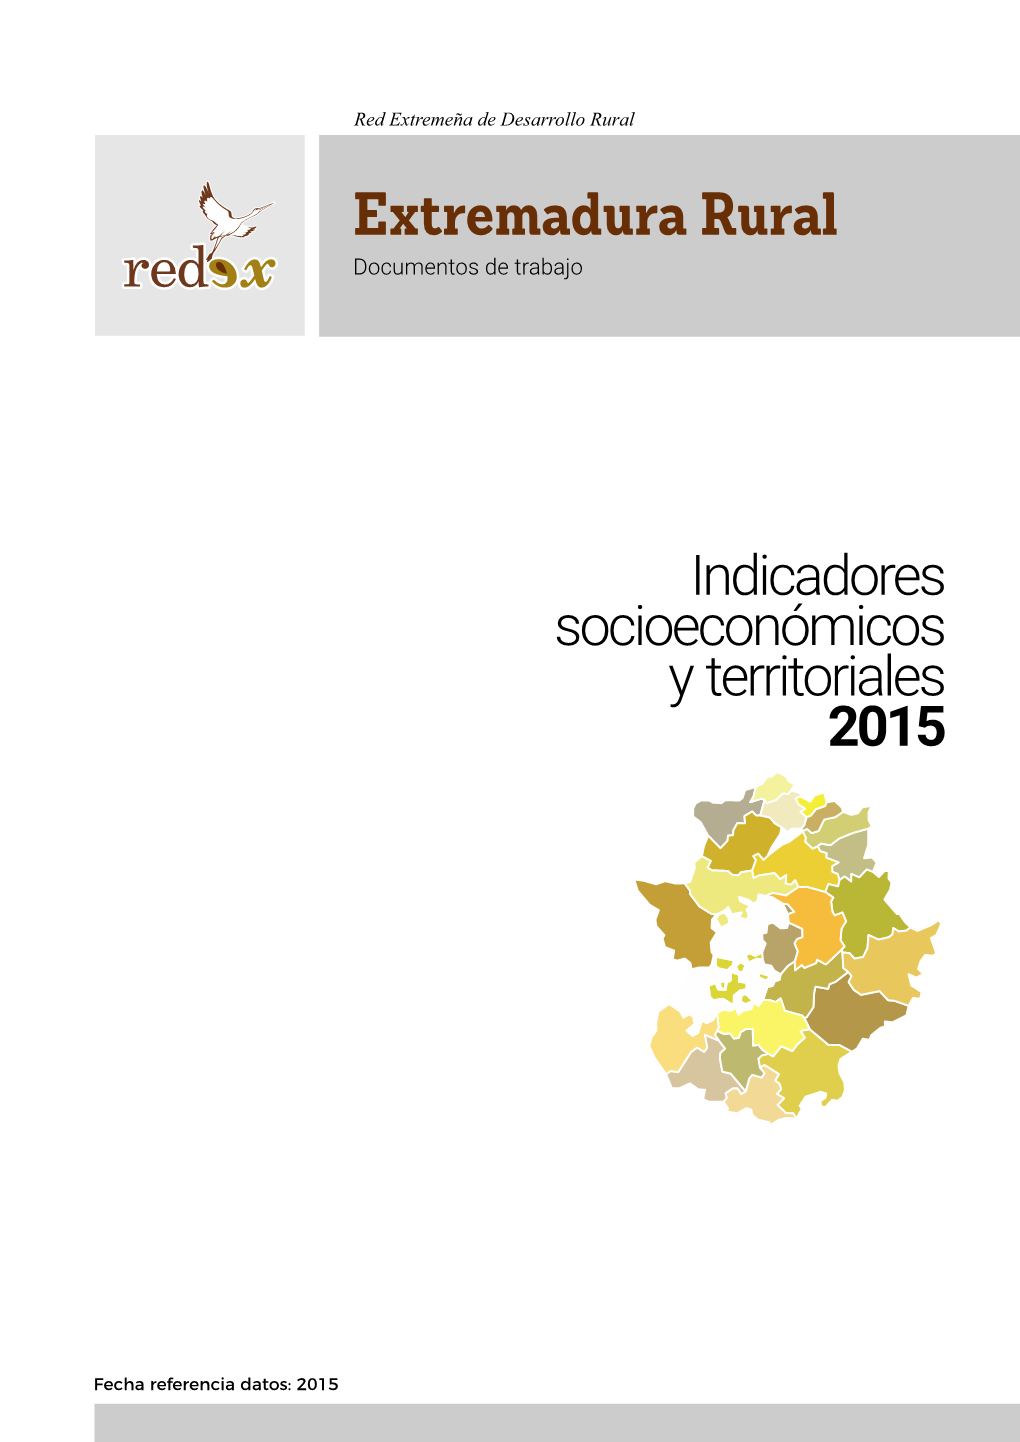 El Territorio Rural Extremeño 2015